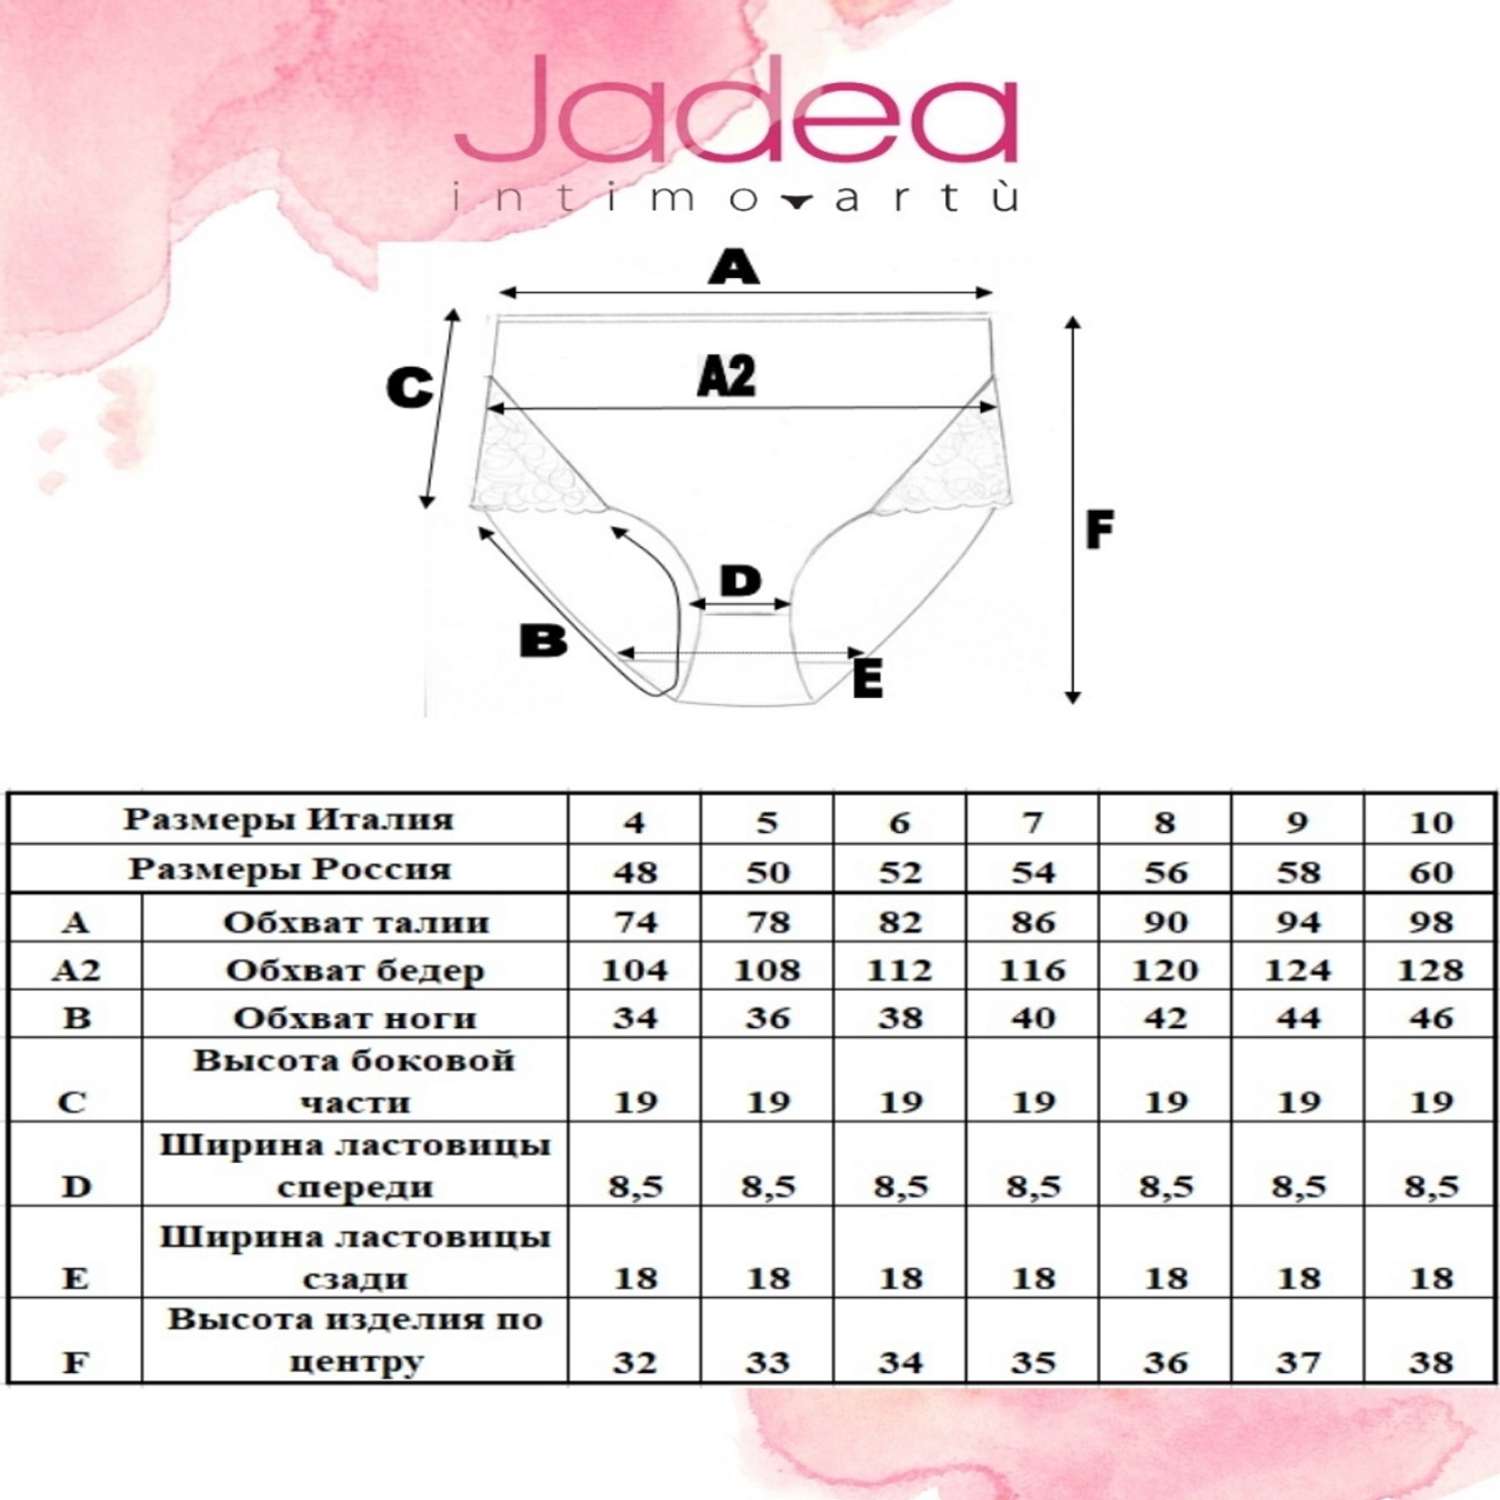 Трусы Jadea JADEA 07 трусы жен белый - фото 3